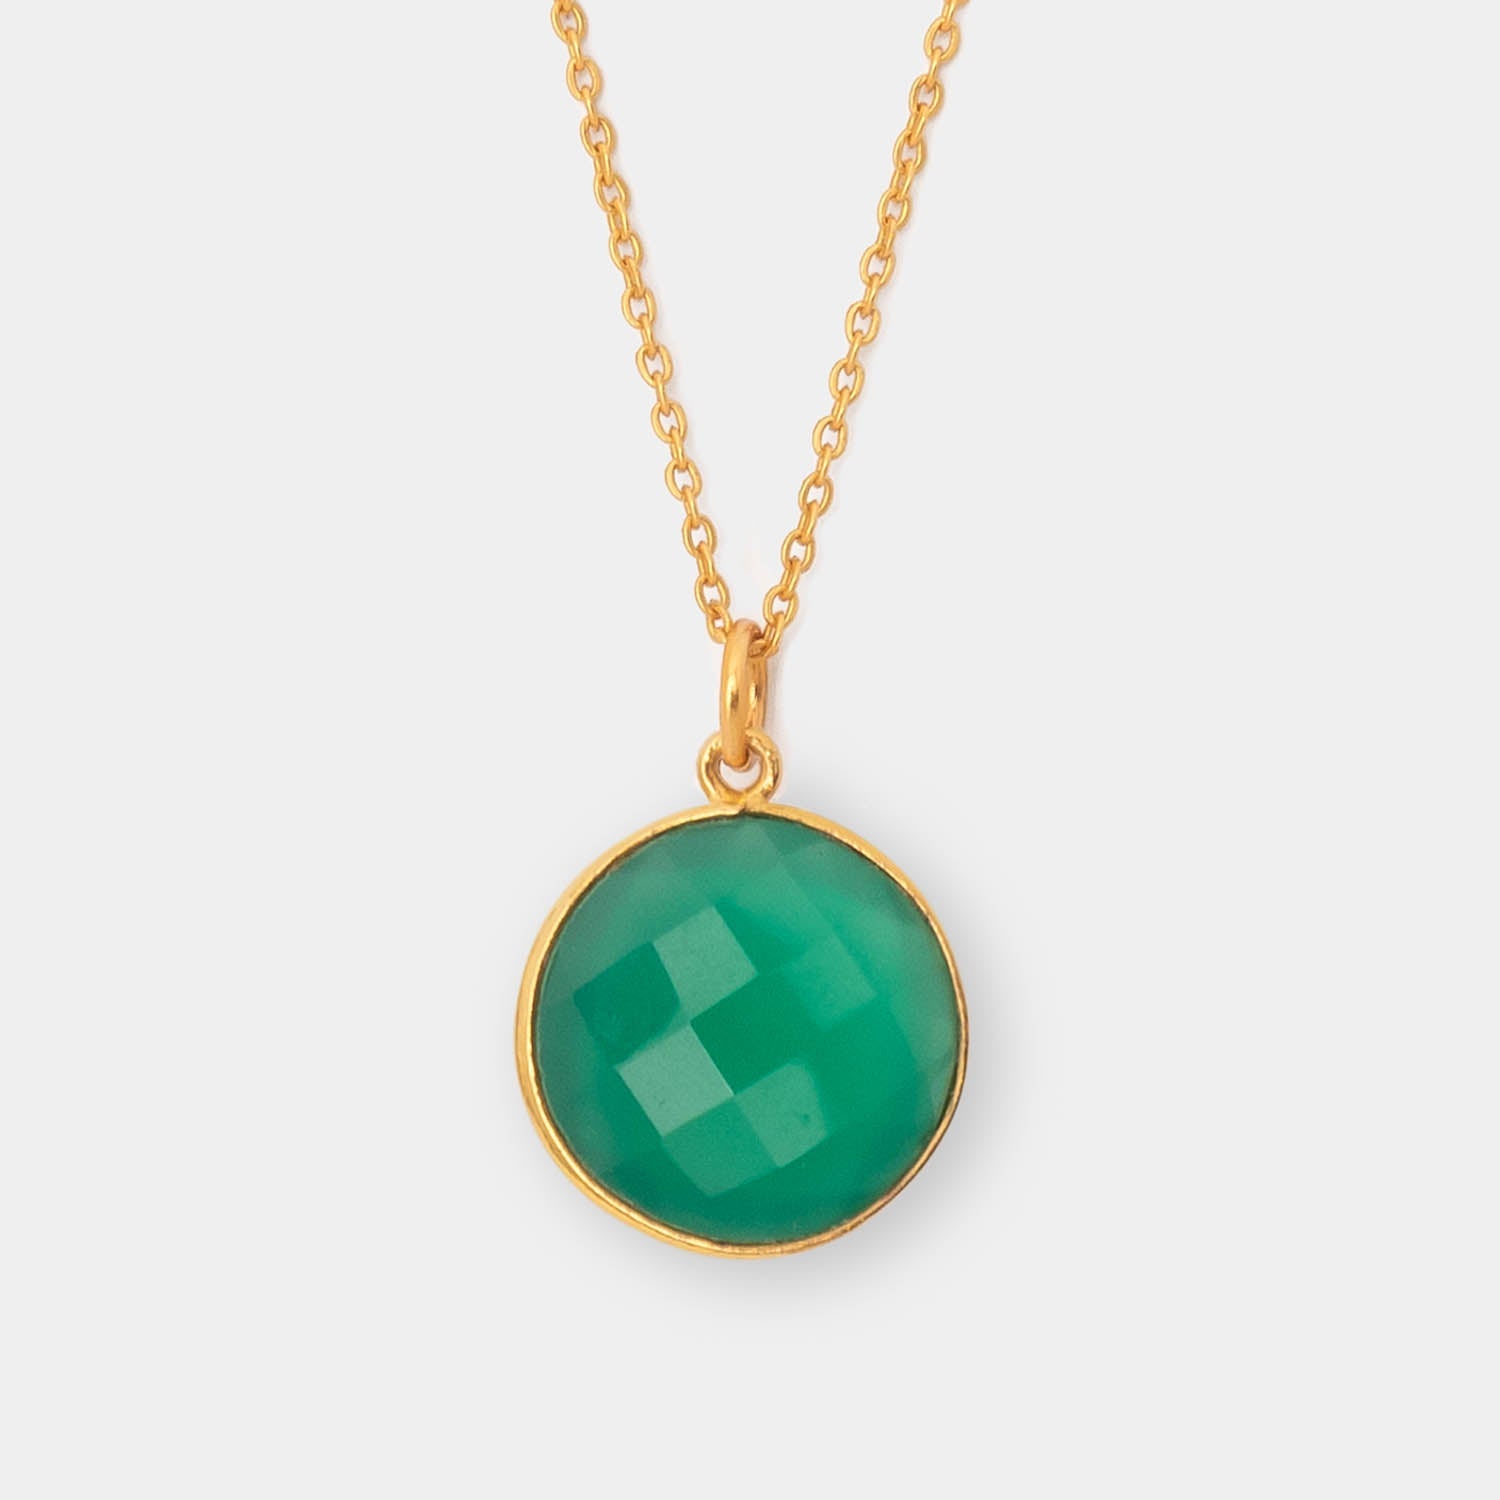 Halskette Cécile Green Onyx - Fleurs des Prés Jewelry